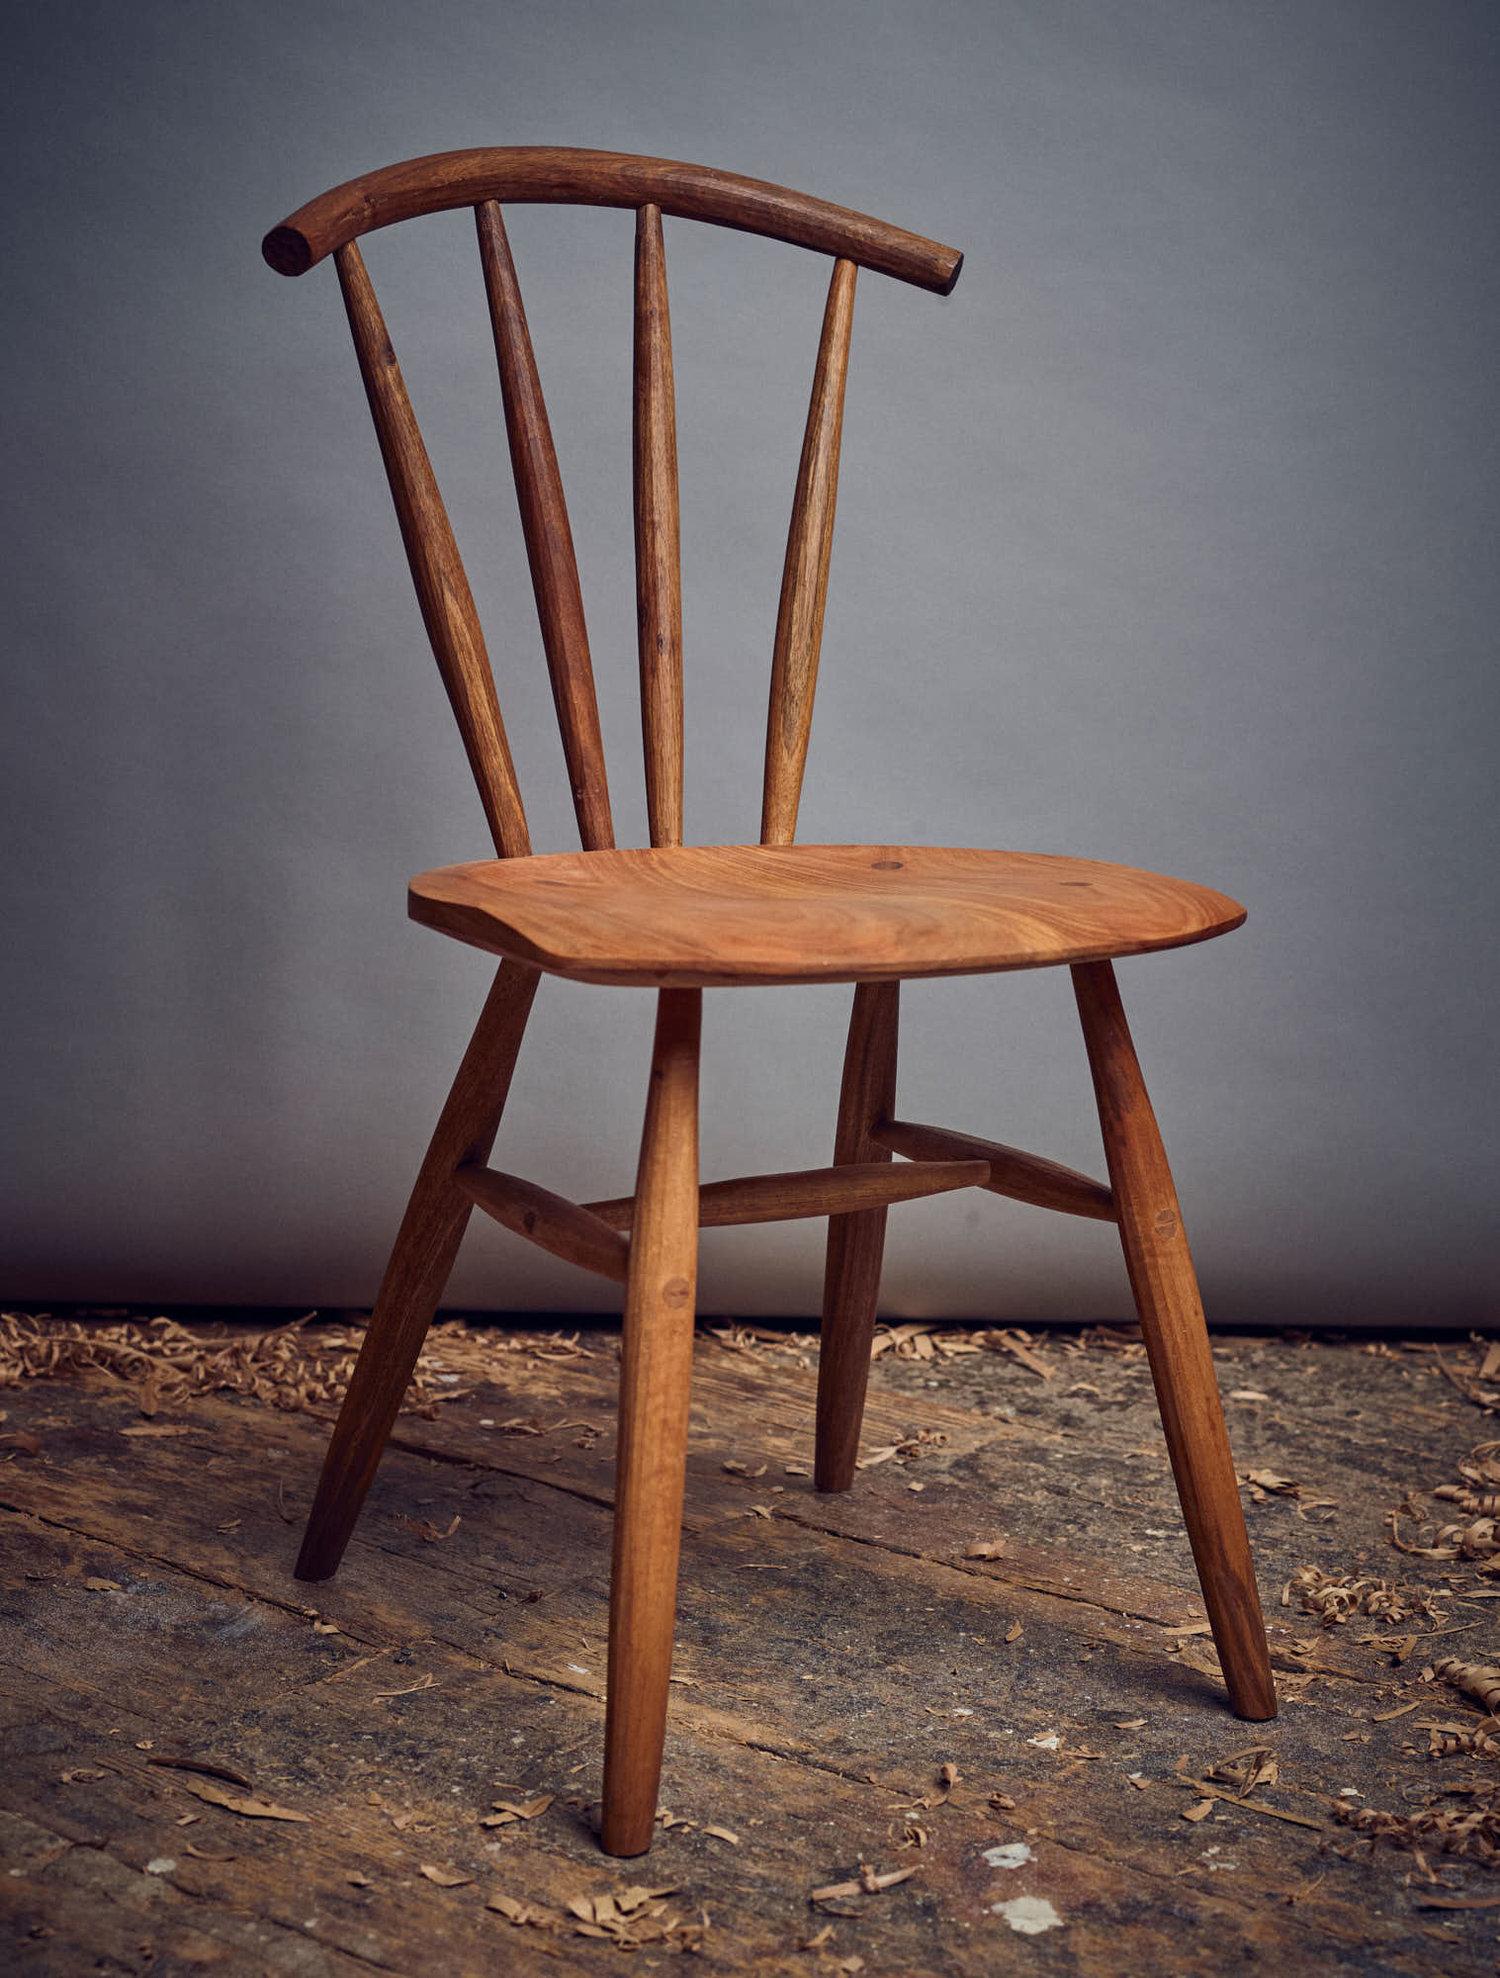 Chaise longue fabriquée sur commande par l'ébéniste allemand Fabian Fischer. Fabriqué dans la tradition et la qualité de l'artisanat des studios américains. Le prix reflète la chaise fabriquée en chêne, mais elle peut également être fabriquée en